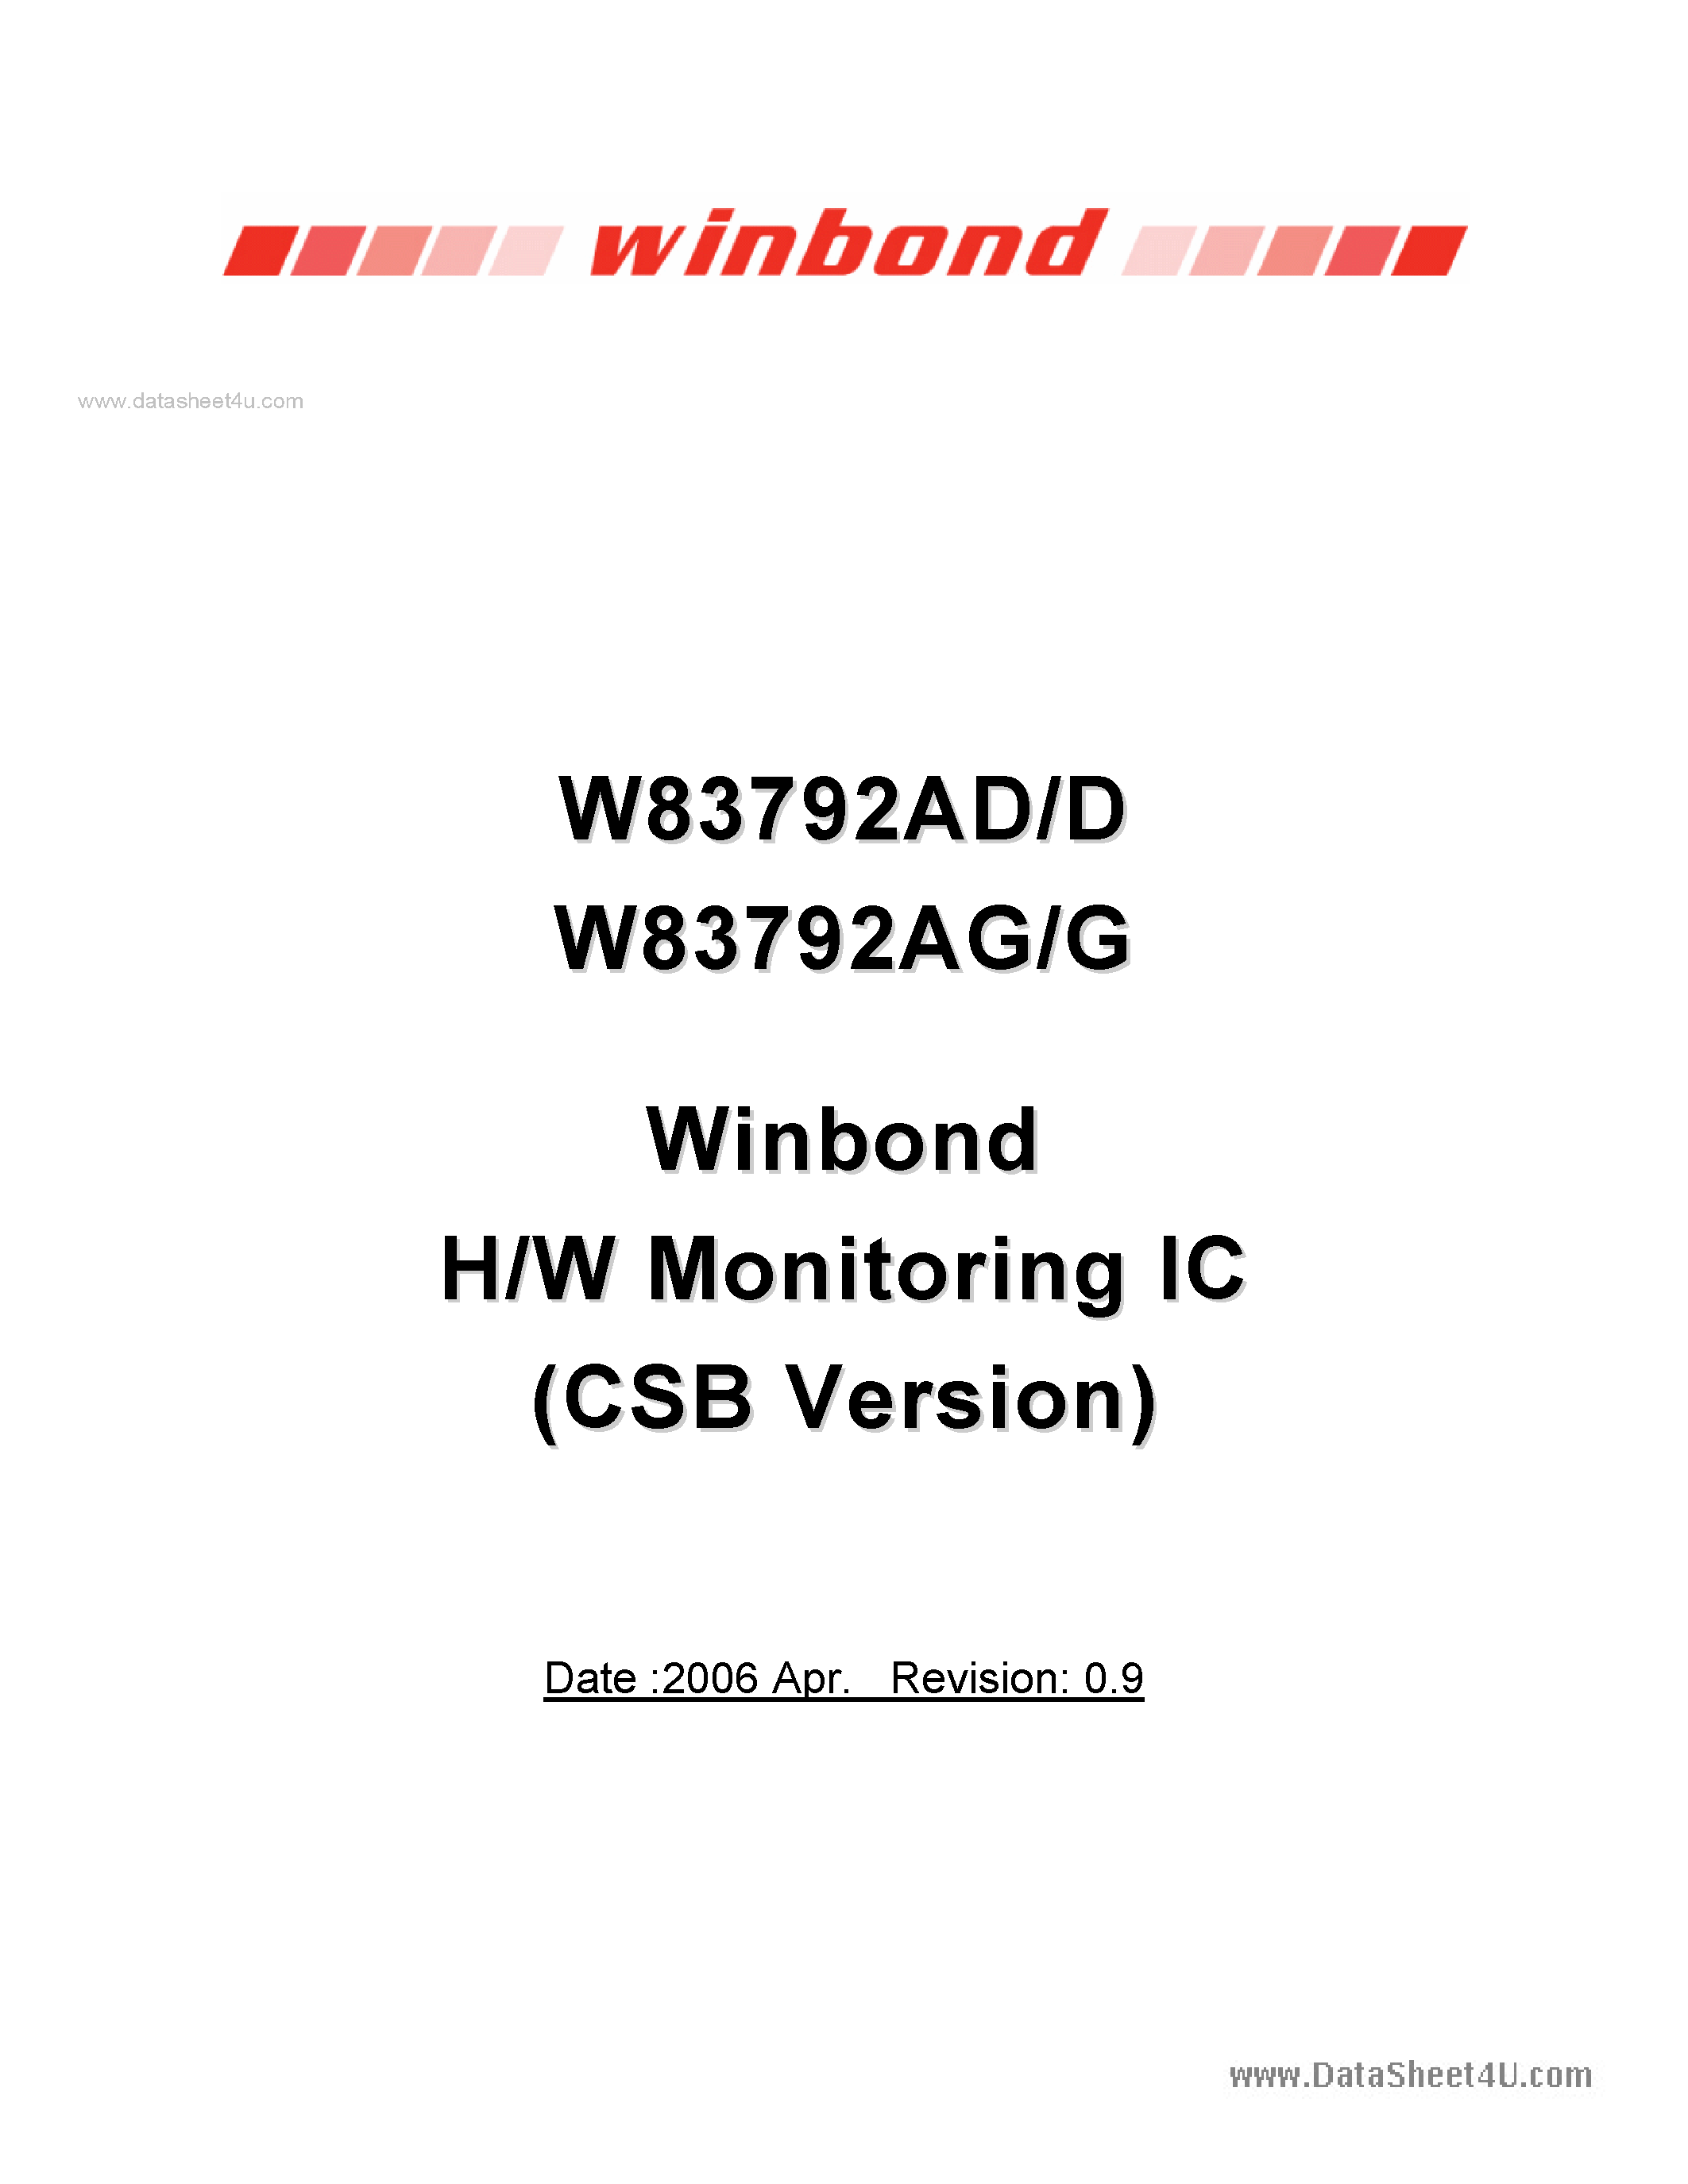 Даташит W83792AD - H/W Monitoring IC страница 1